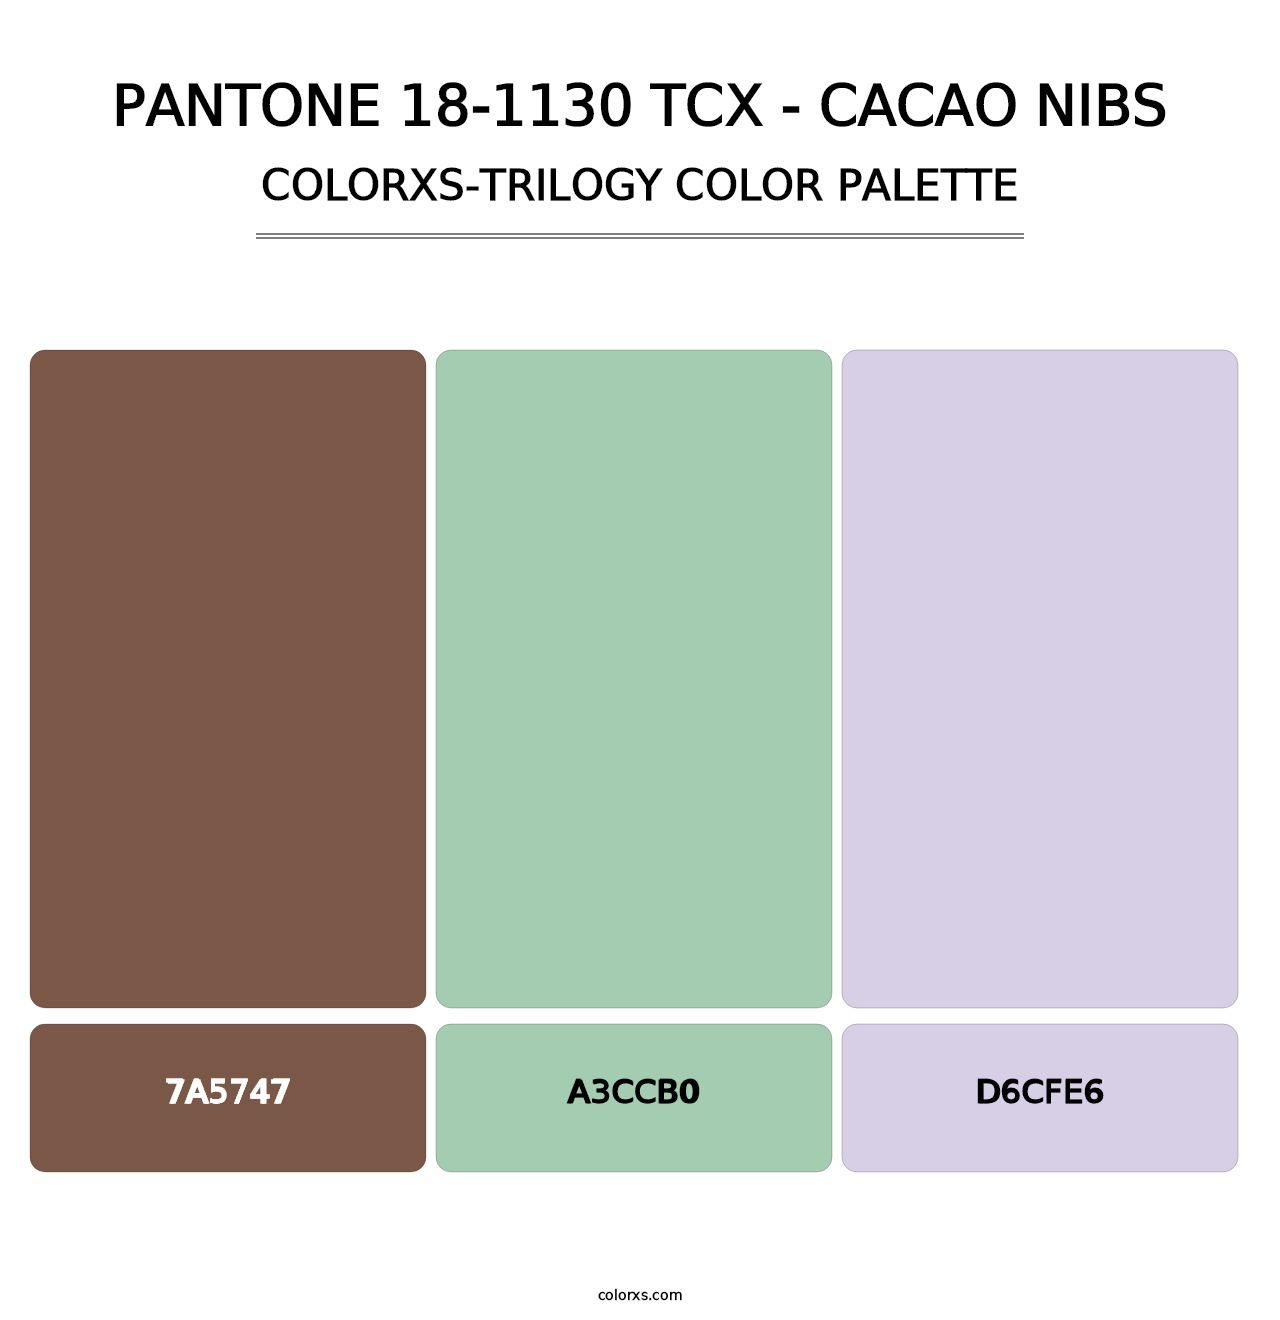 PANTONE 18-1130 TCX - Cacao Nibs - Colorxs Trilogy Palette